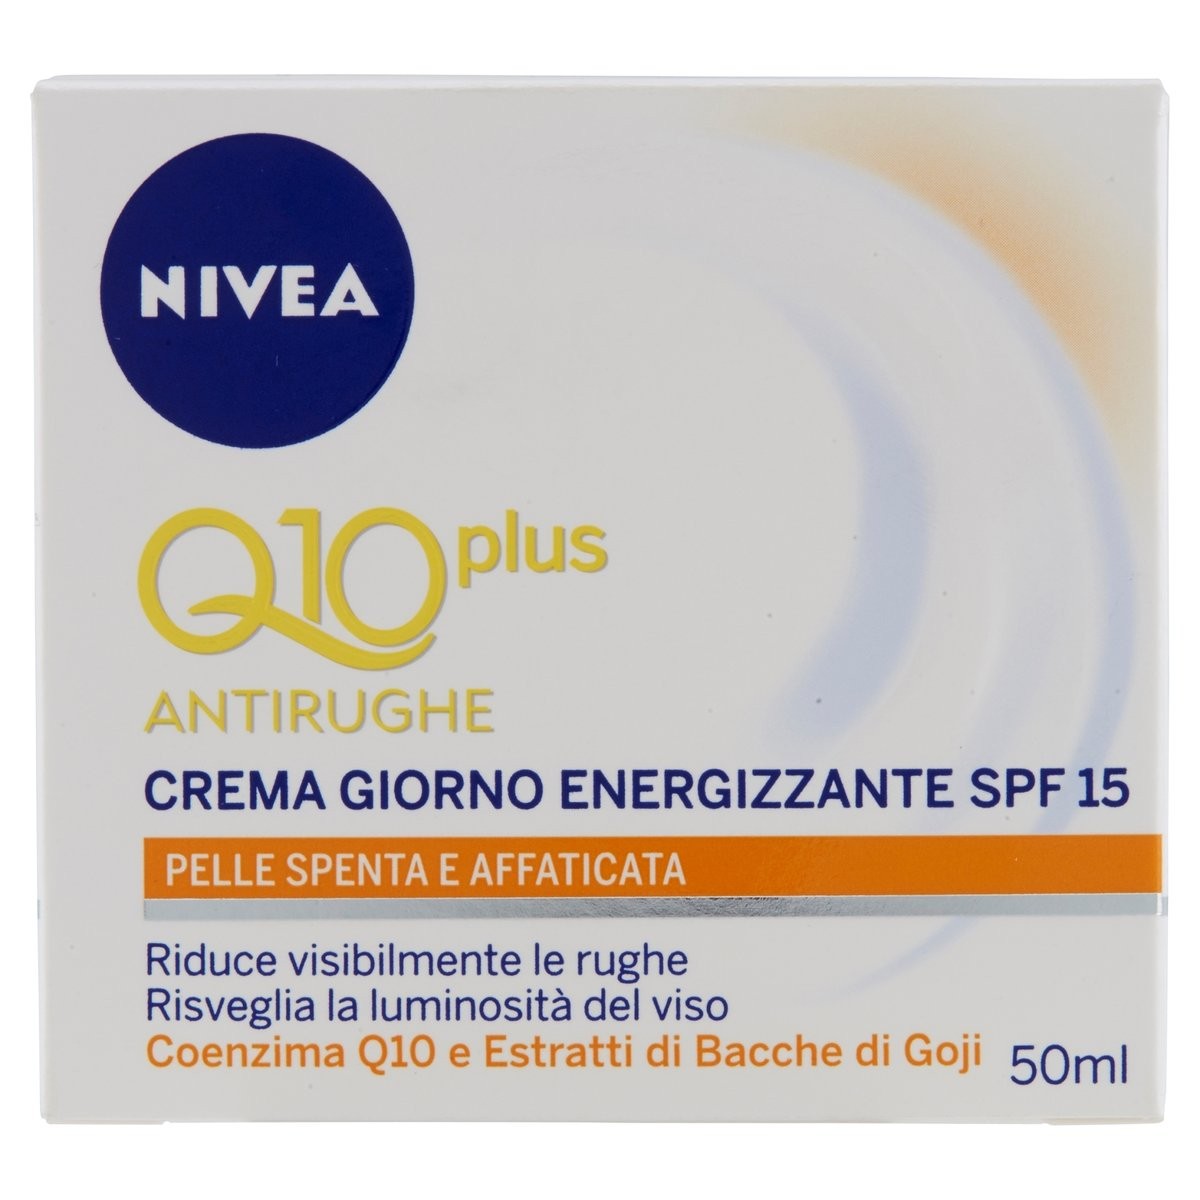 Nivea Q10 plus Crema giorno energizzante SPF 15